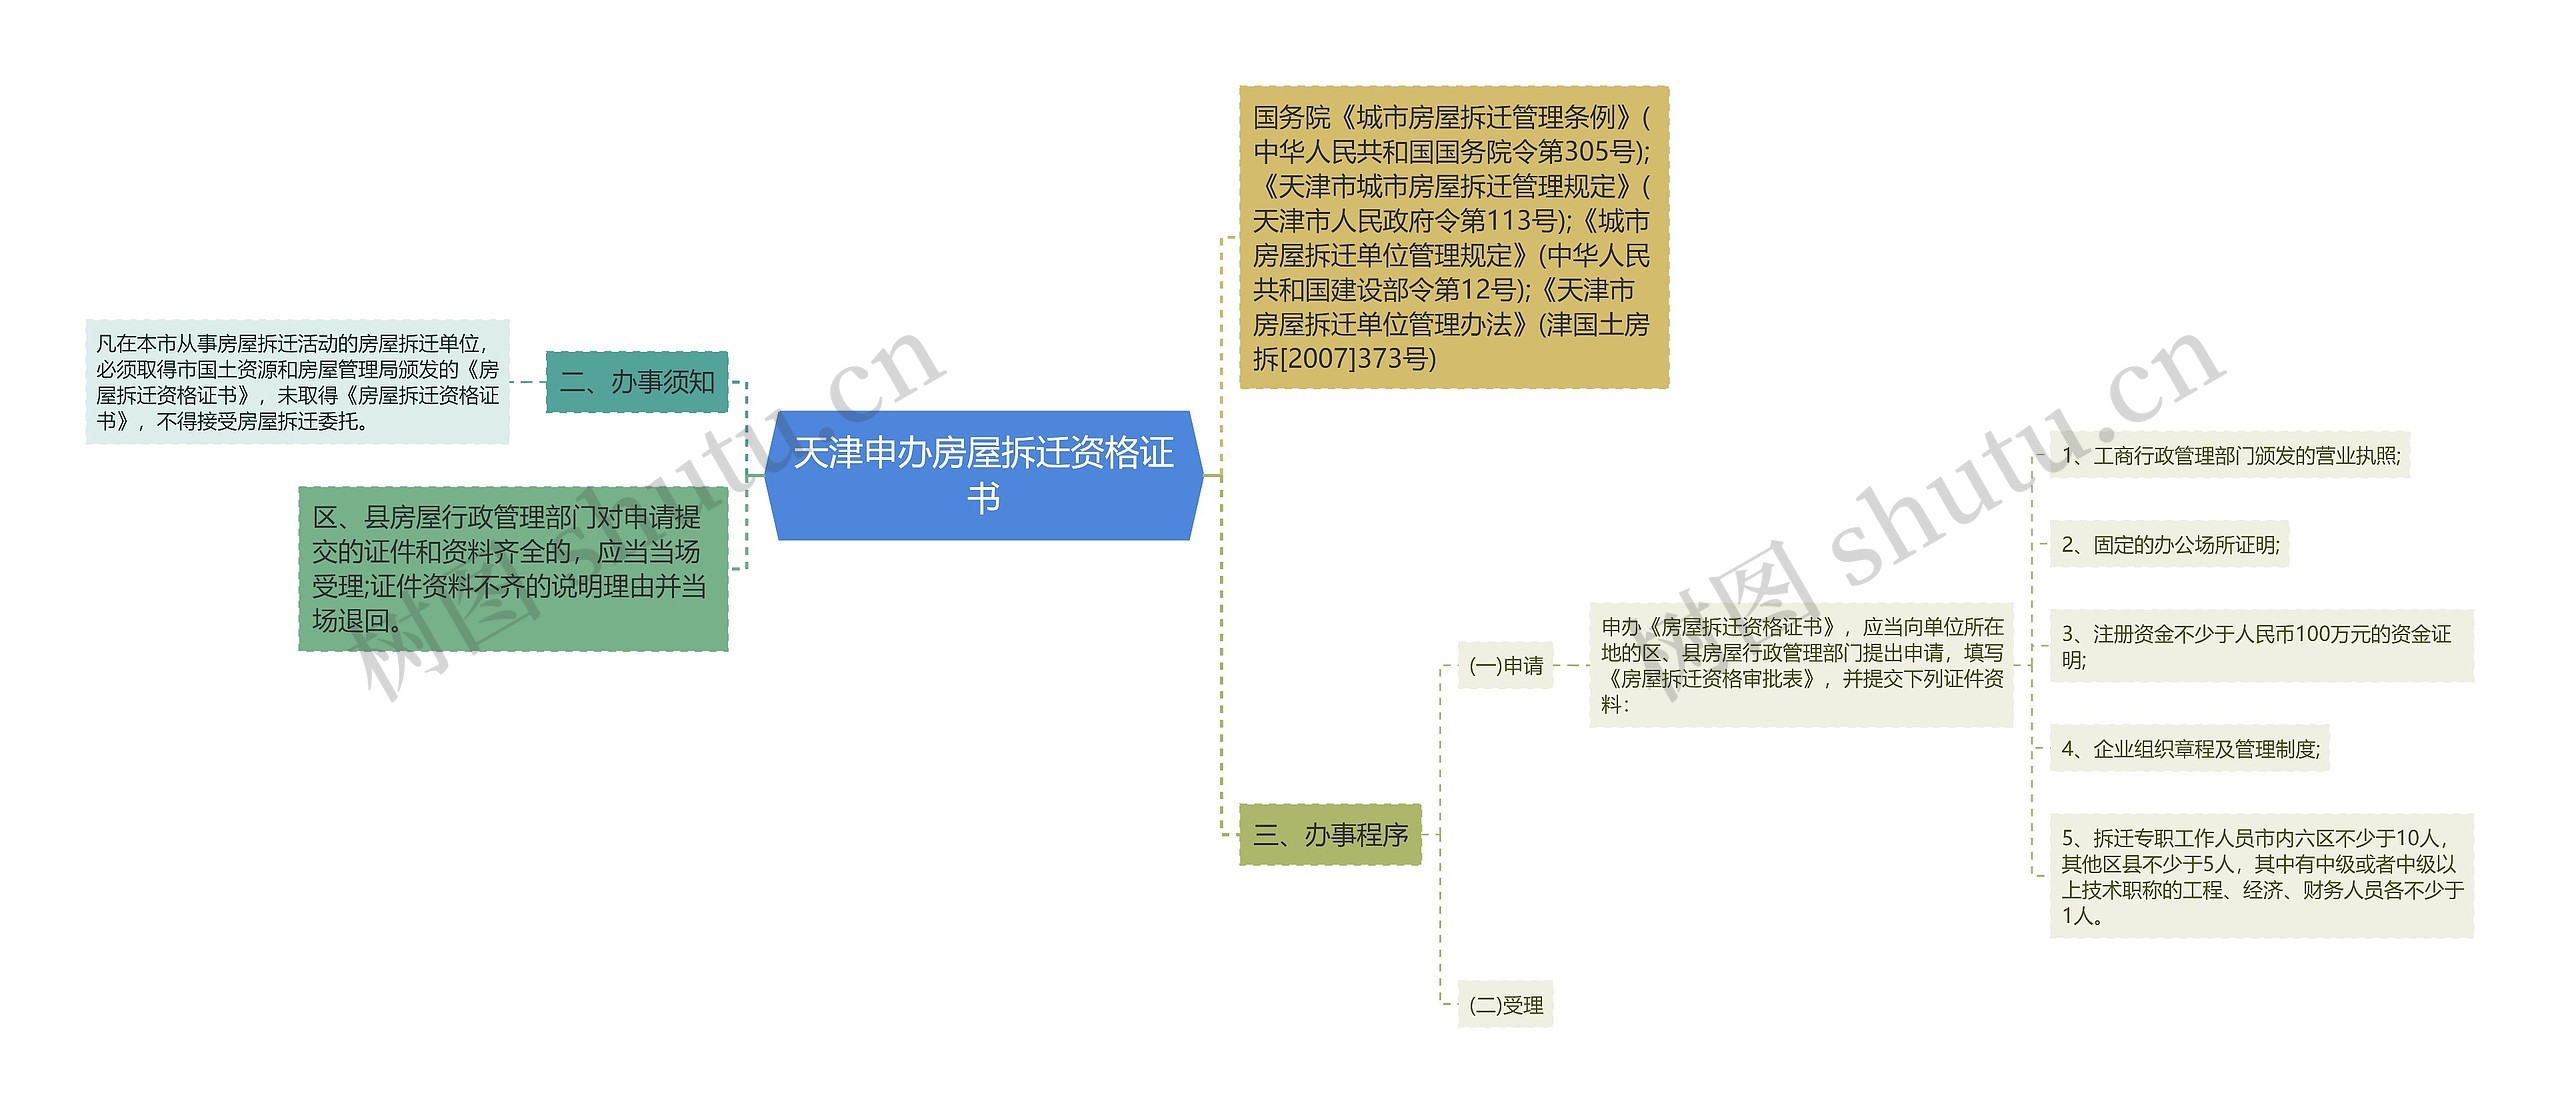 天津申办房屋拆迁资格证书